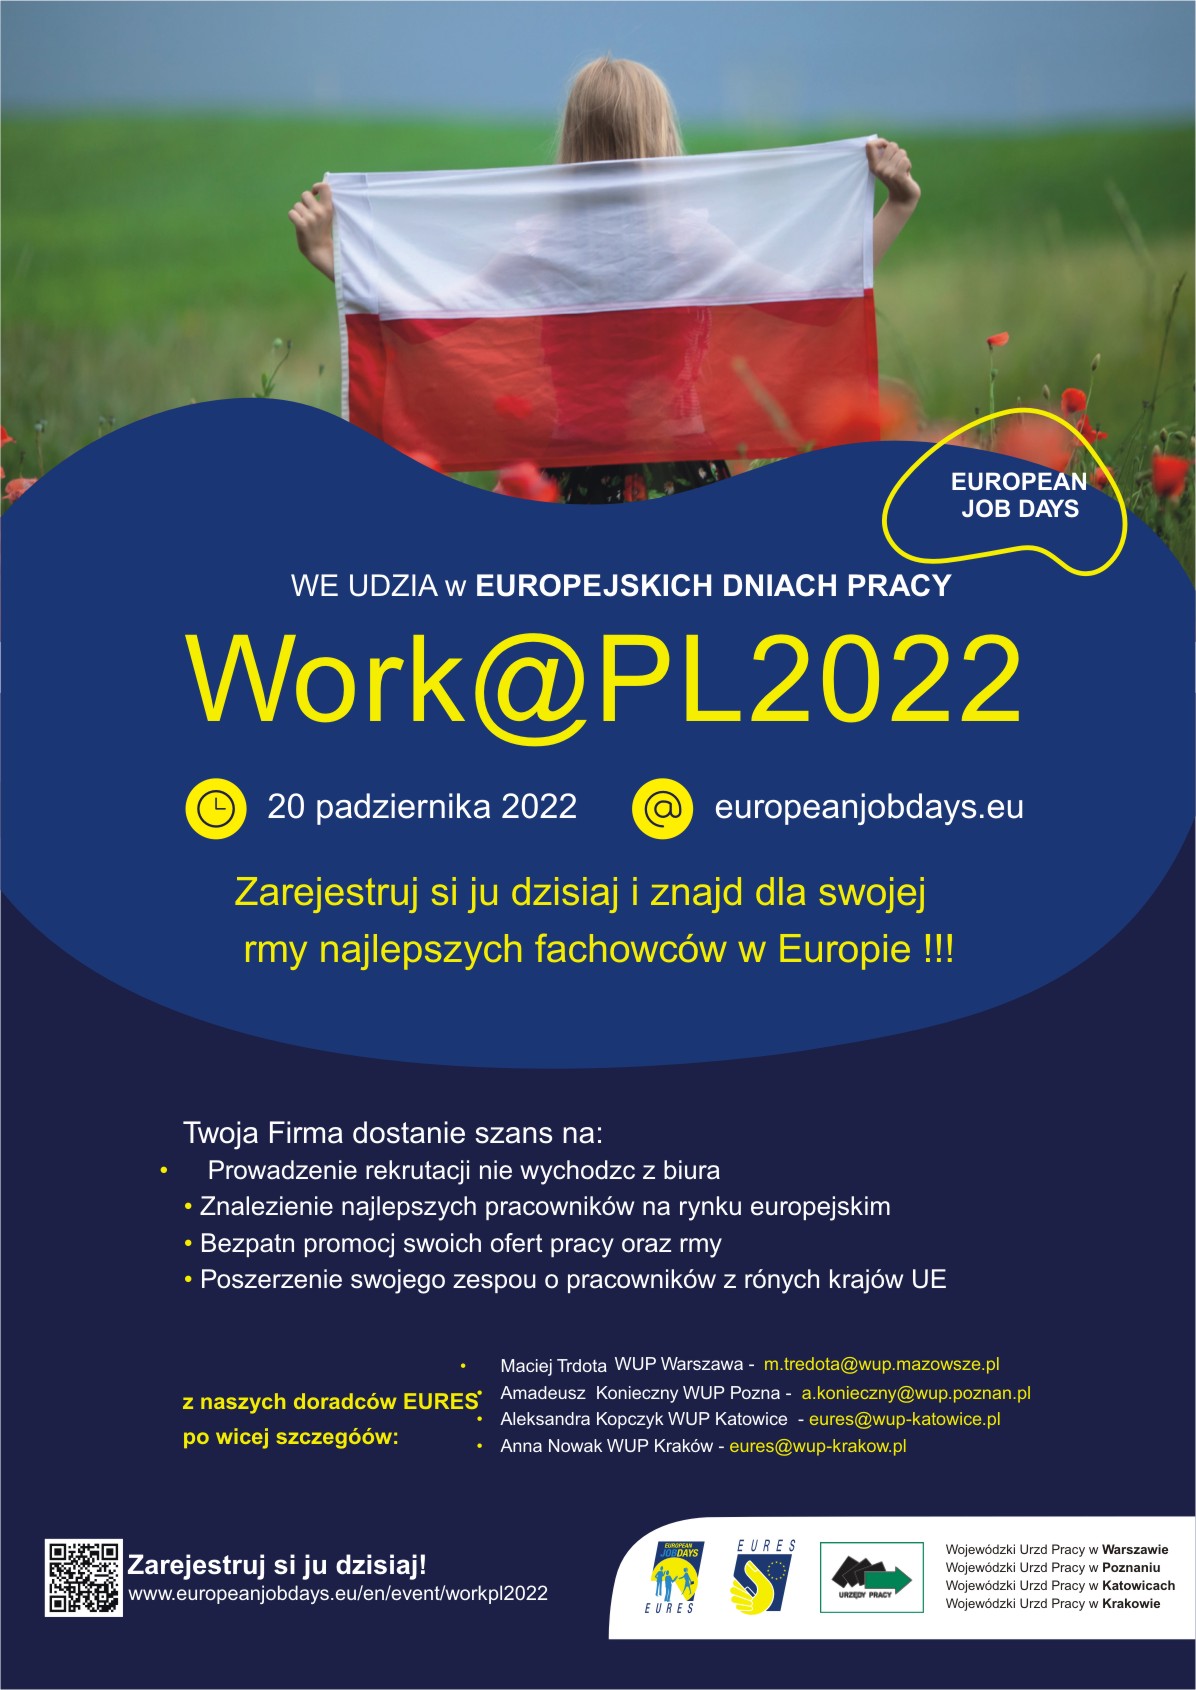 Plakat promujący wydarzenie: Europejskie Dni Pracy